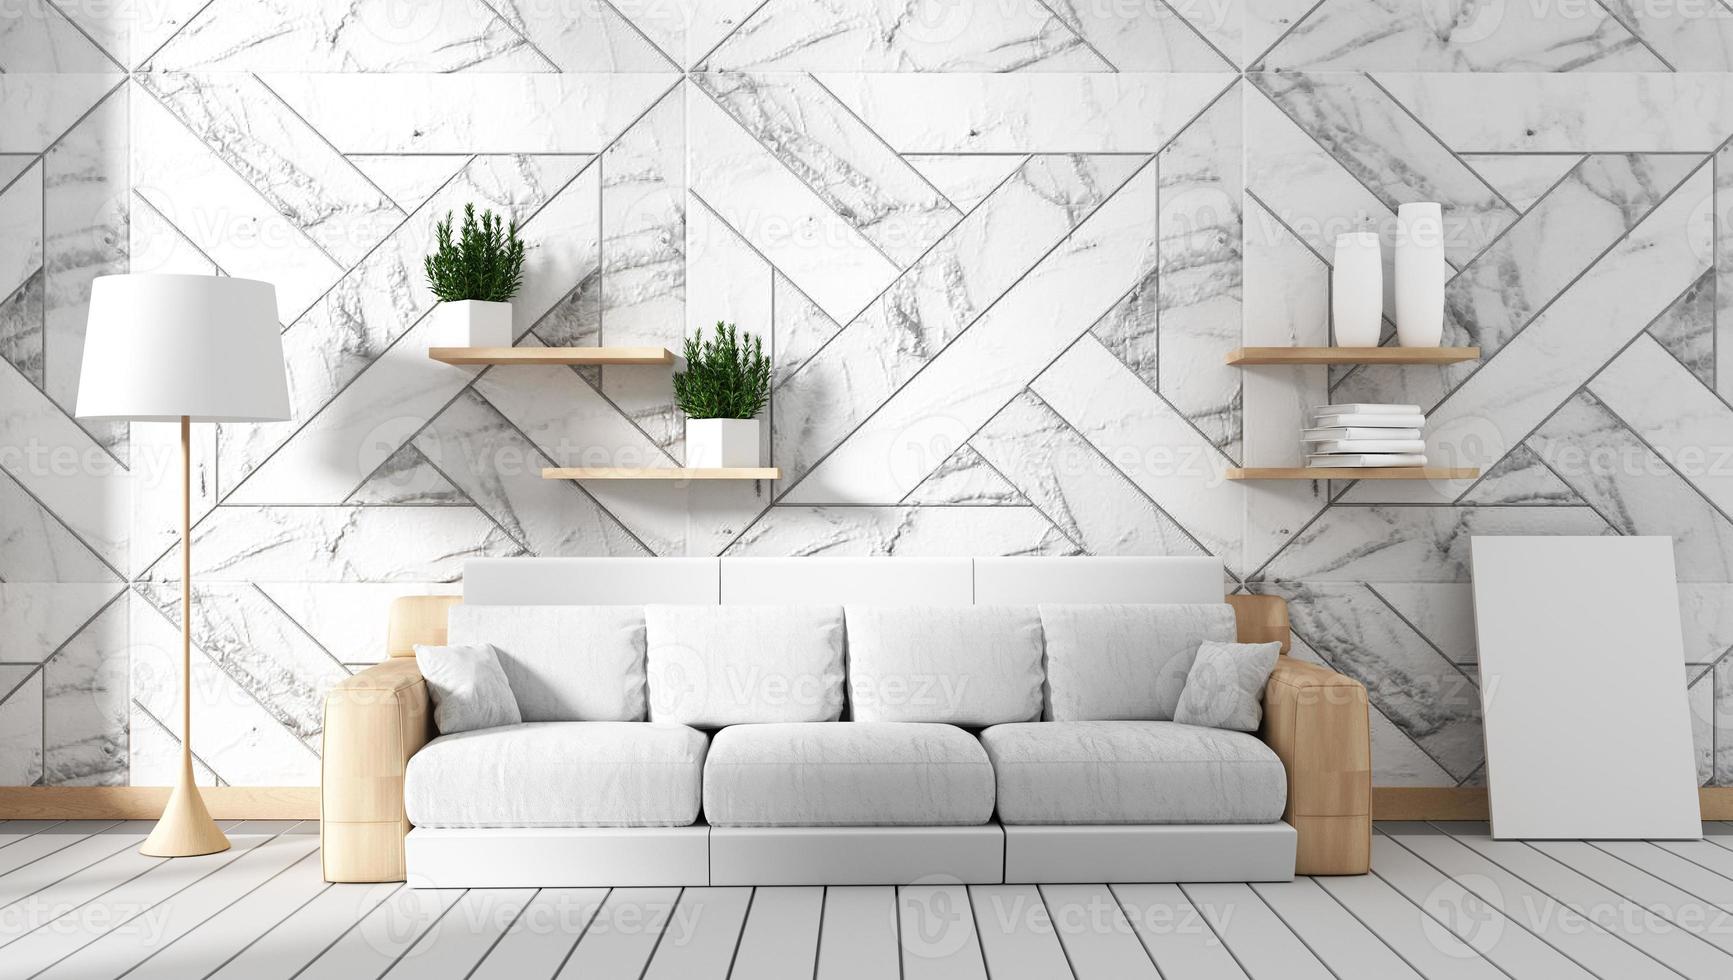 Wohnzimmerinnenraum mit Sofa und Grünpflanzen auf Granitwandhintergrund, minimale Designs, 3D-Rendering foto